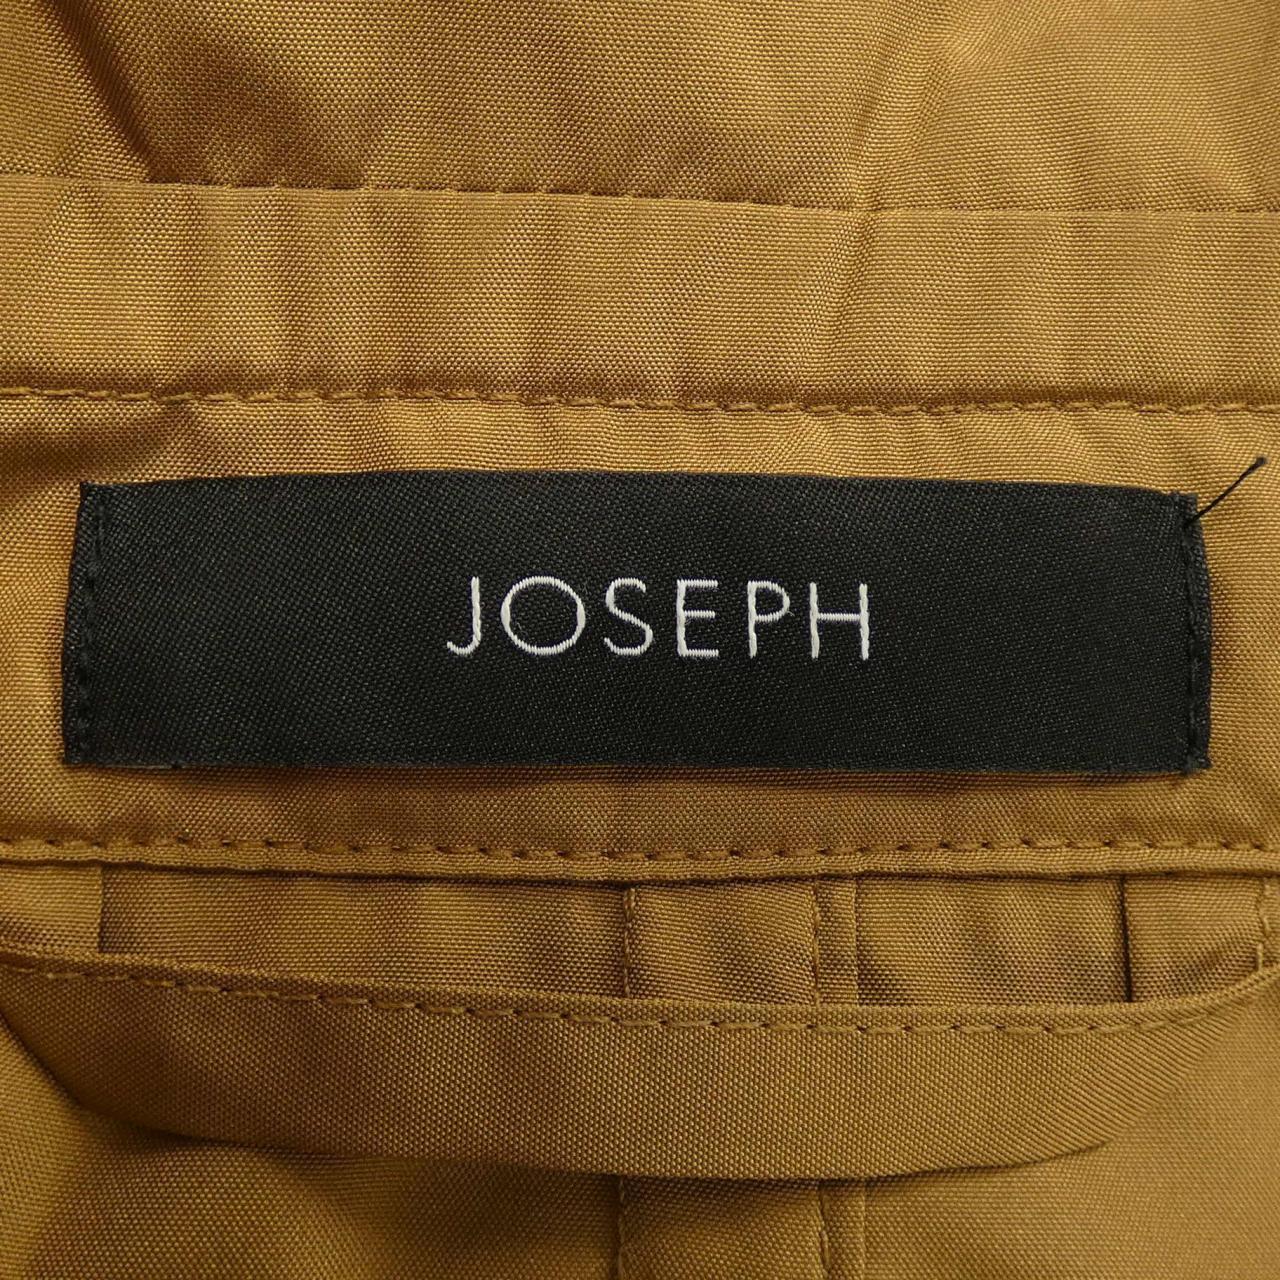 Joseph JOSEPH trench coat